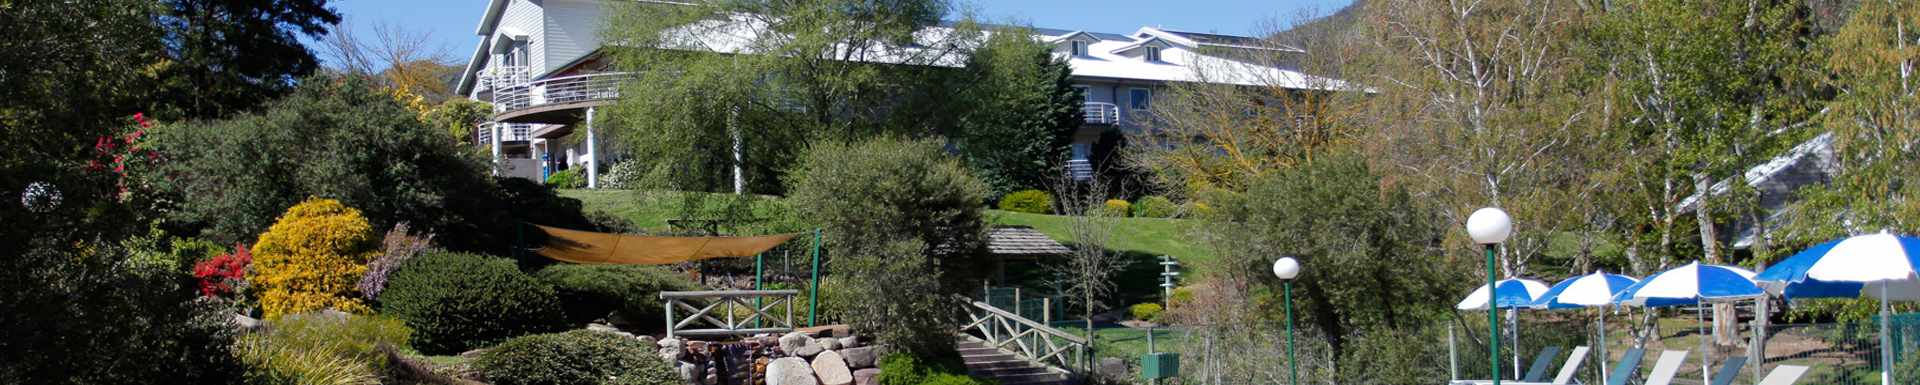 The Sebel Pinnacle Valley Resort